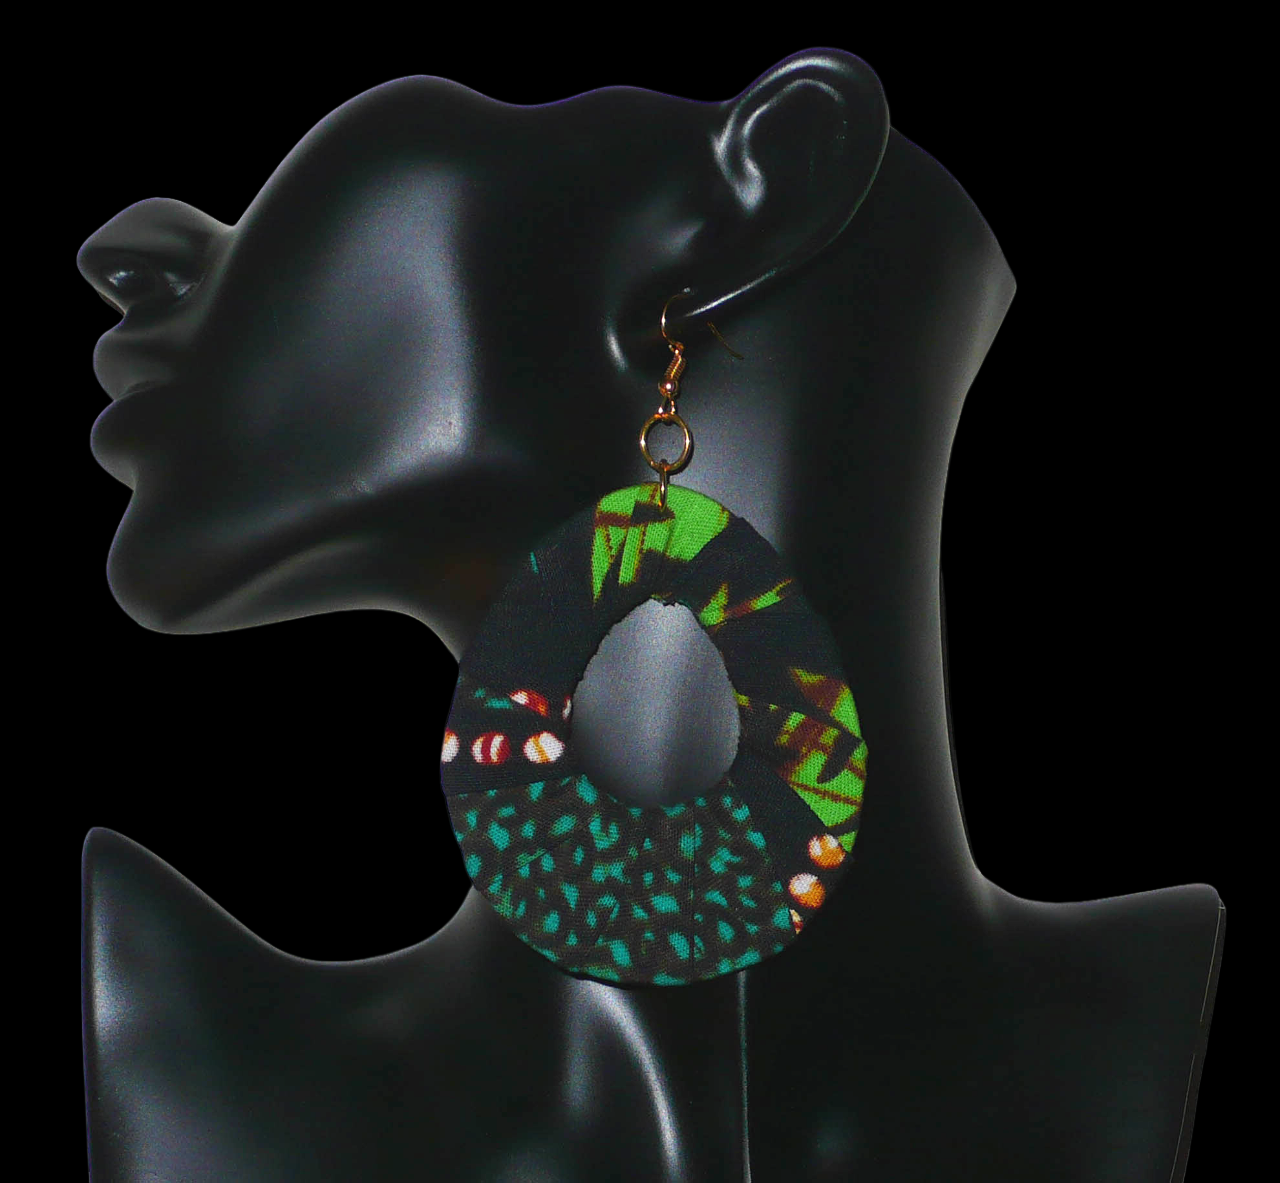 Boucles d'oreilles africaines surdimensionnées composées de bandes de tissu africain principalement vert et noir enroulées sur une structure en forme de gouttes. Elles mesurent 10,5 cm de long et 6,5 cm de large et se portent avec des crochets en acier inoxydable sur des oreilles percées. Timeless Fineries